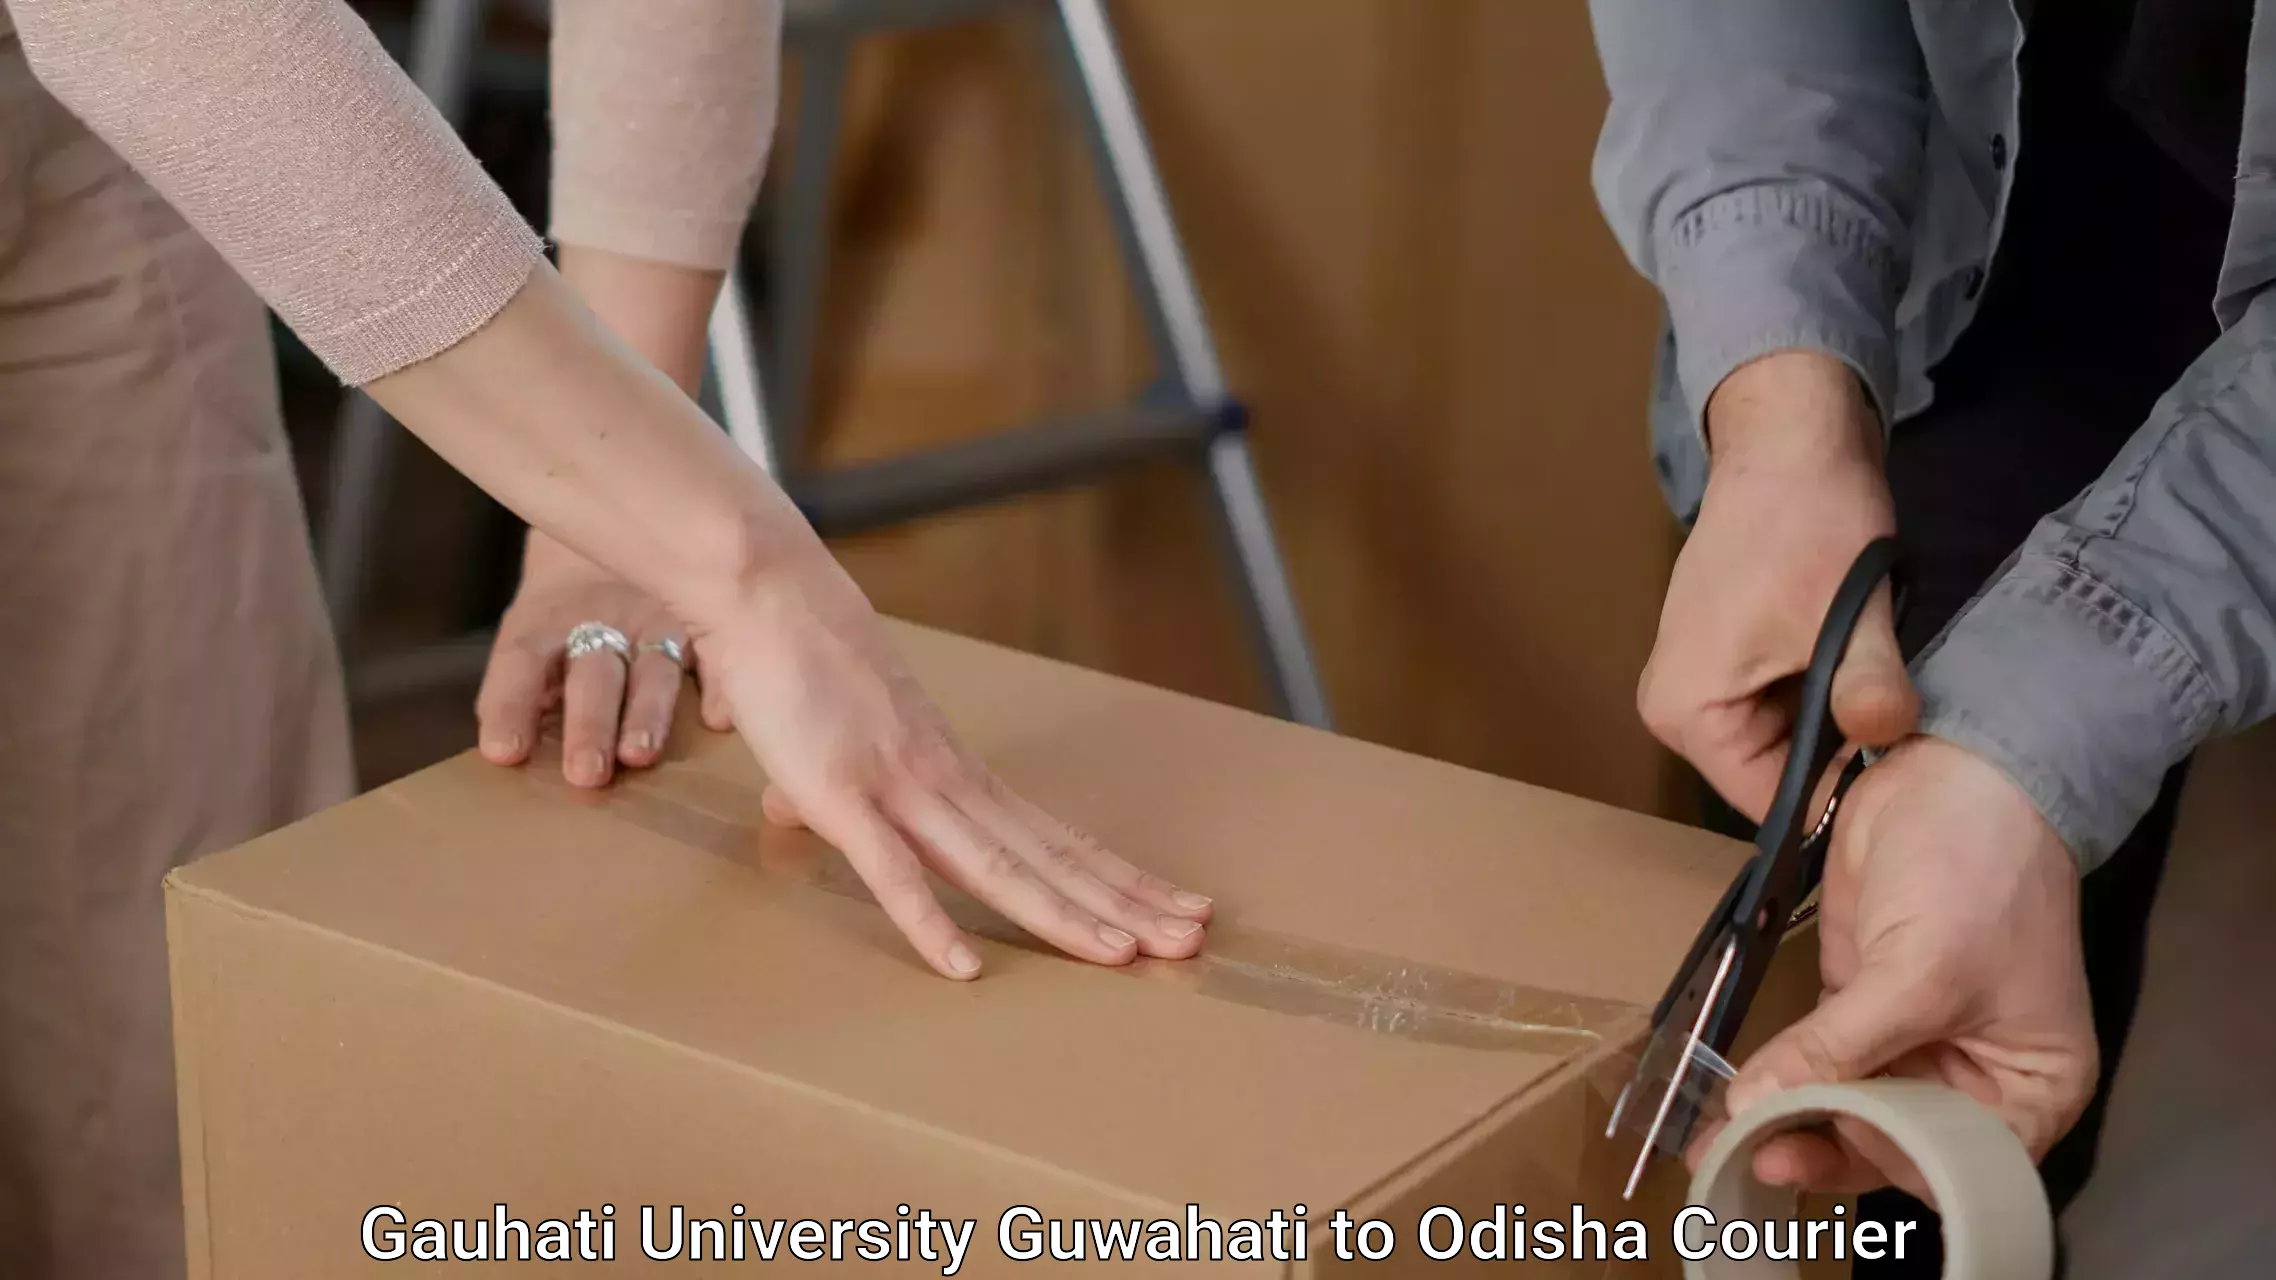 Professional furniture transport Gauhati University Guwahati to Baleswar